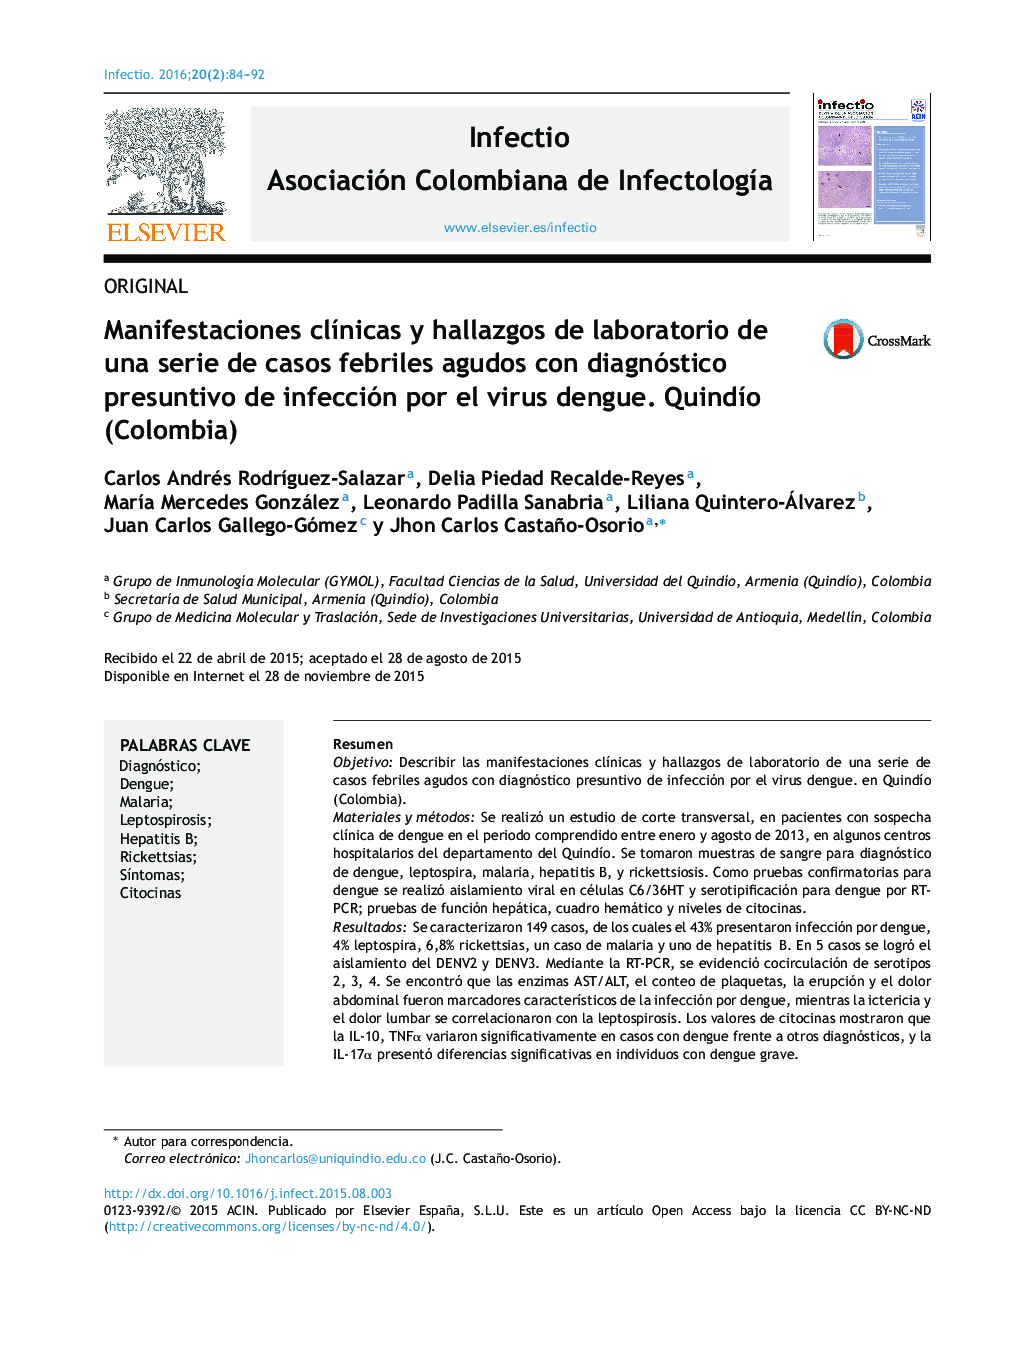 Manifestaciones clínicas y hallazgos de laboratorio de una serie de casos febriles agudos con diagnóstico presuntivo de infección por el virus dengue. Quindío (Colombia)